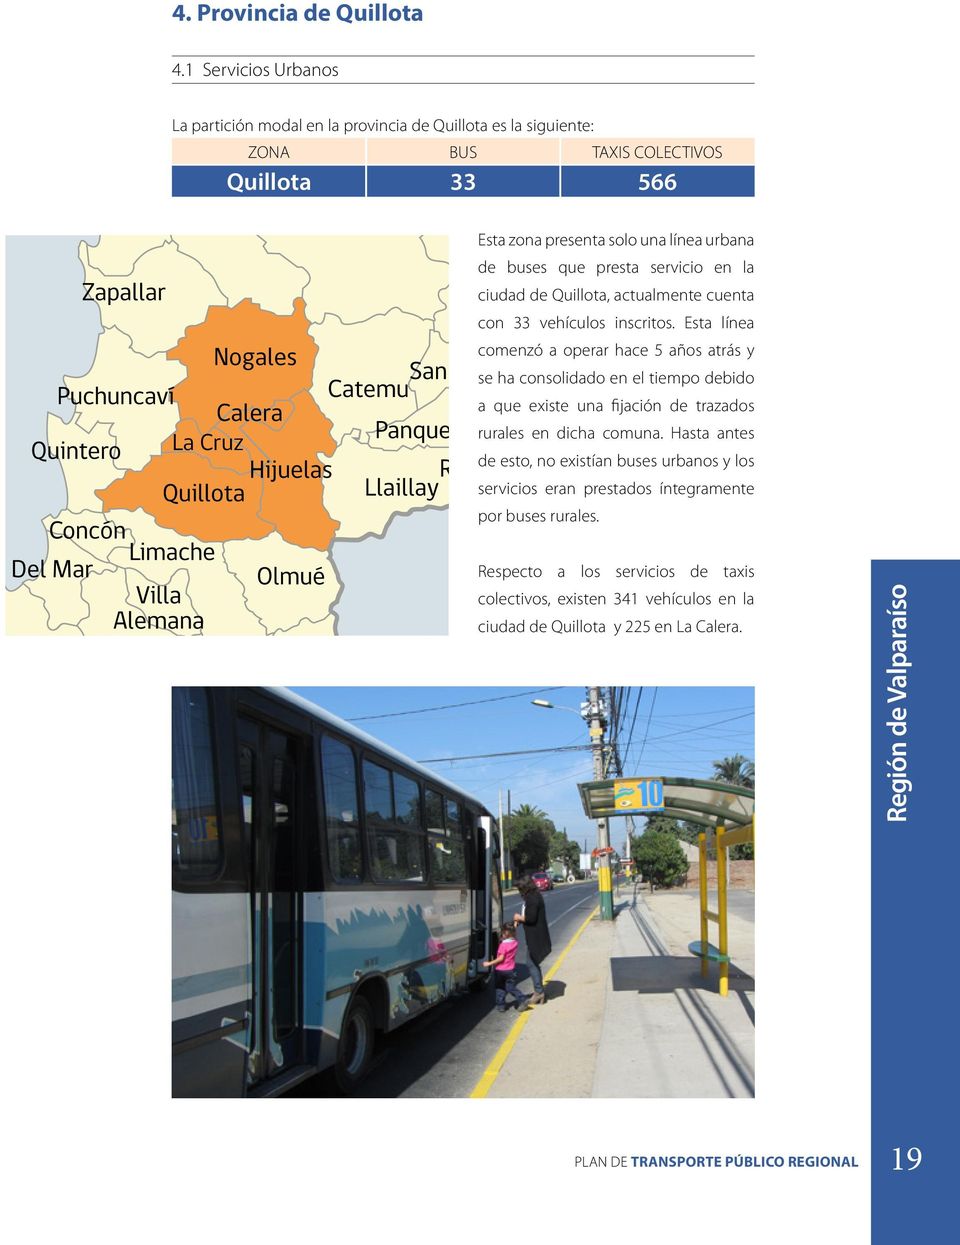 urbana de buses que presta servicio en la ciudad de Quillota, actualmente cuenta con 33 vehículos inscritos.